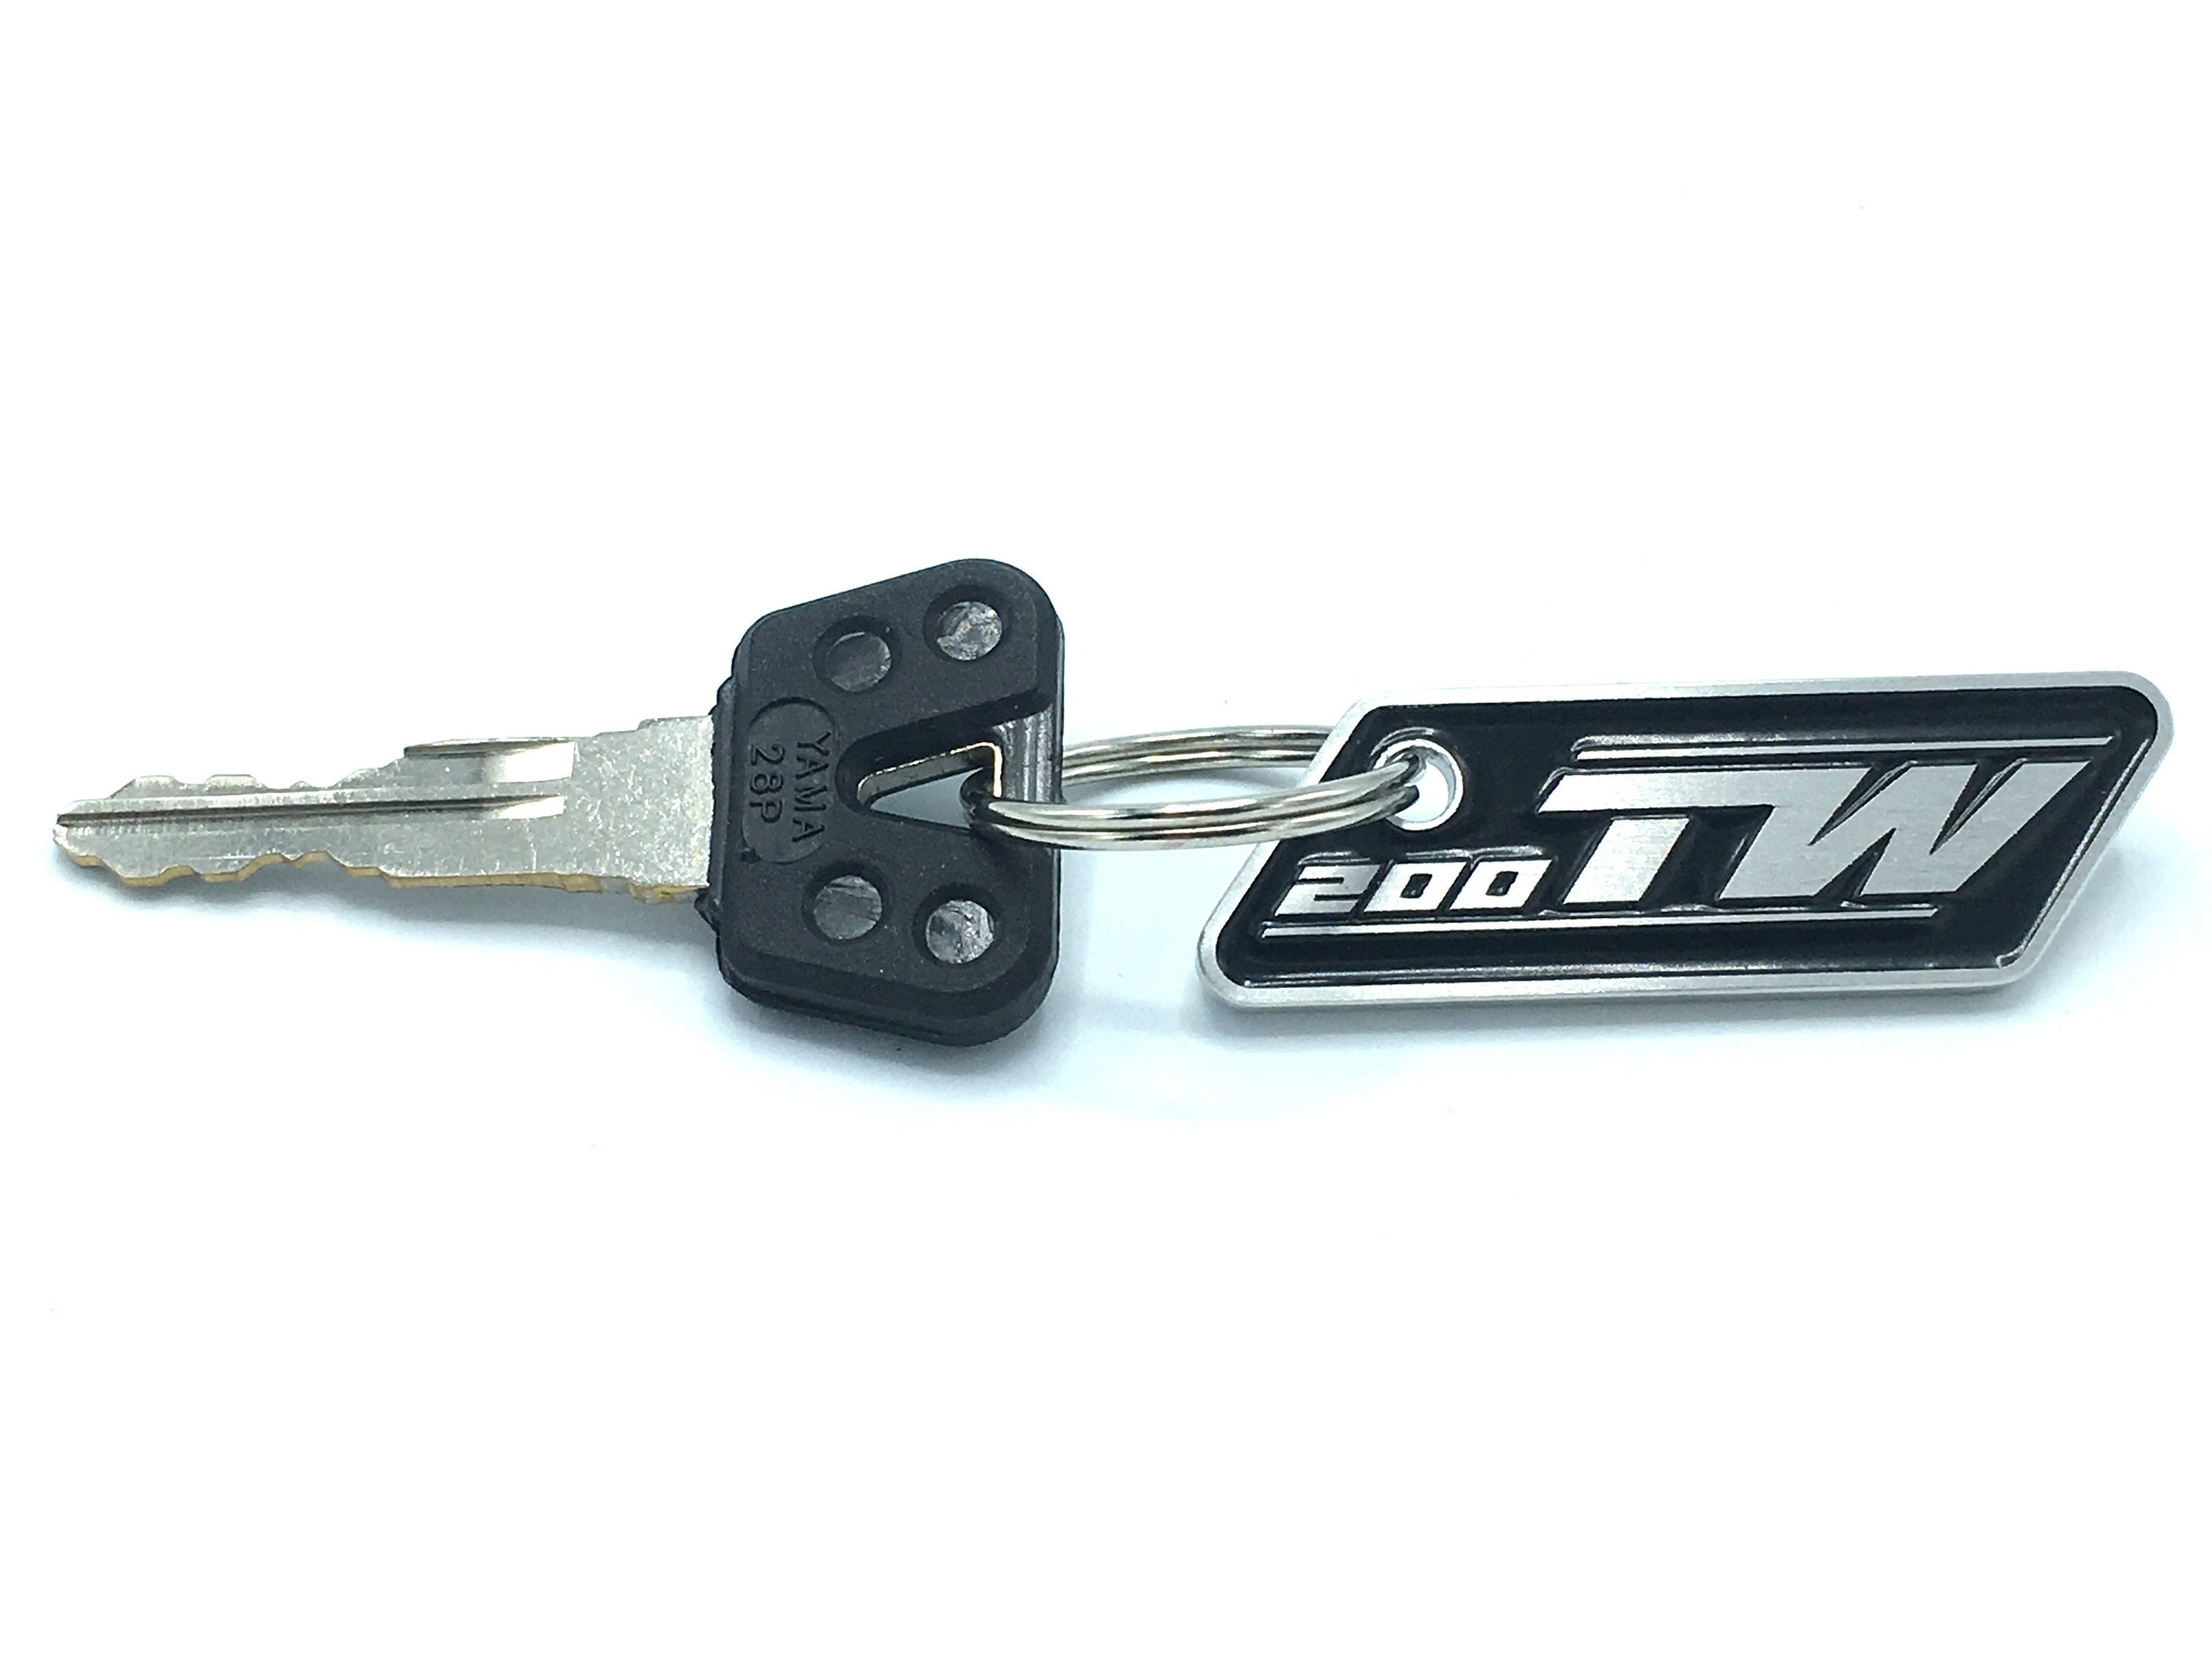 TW200 Keychain (TW 200, Trailway, Yamaha)